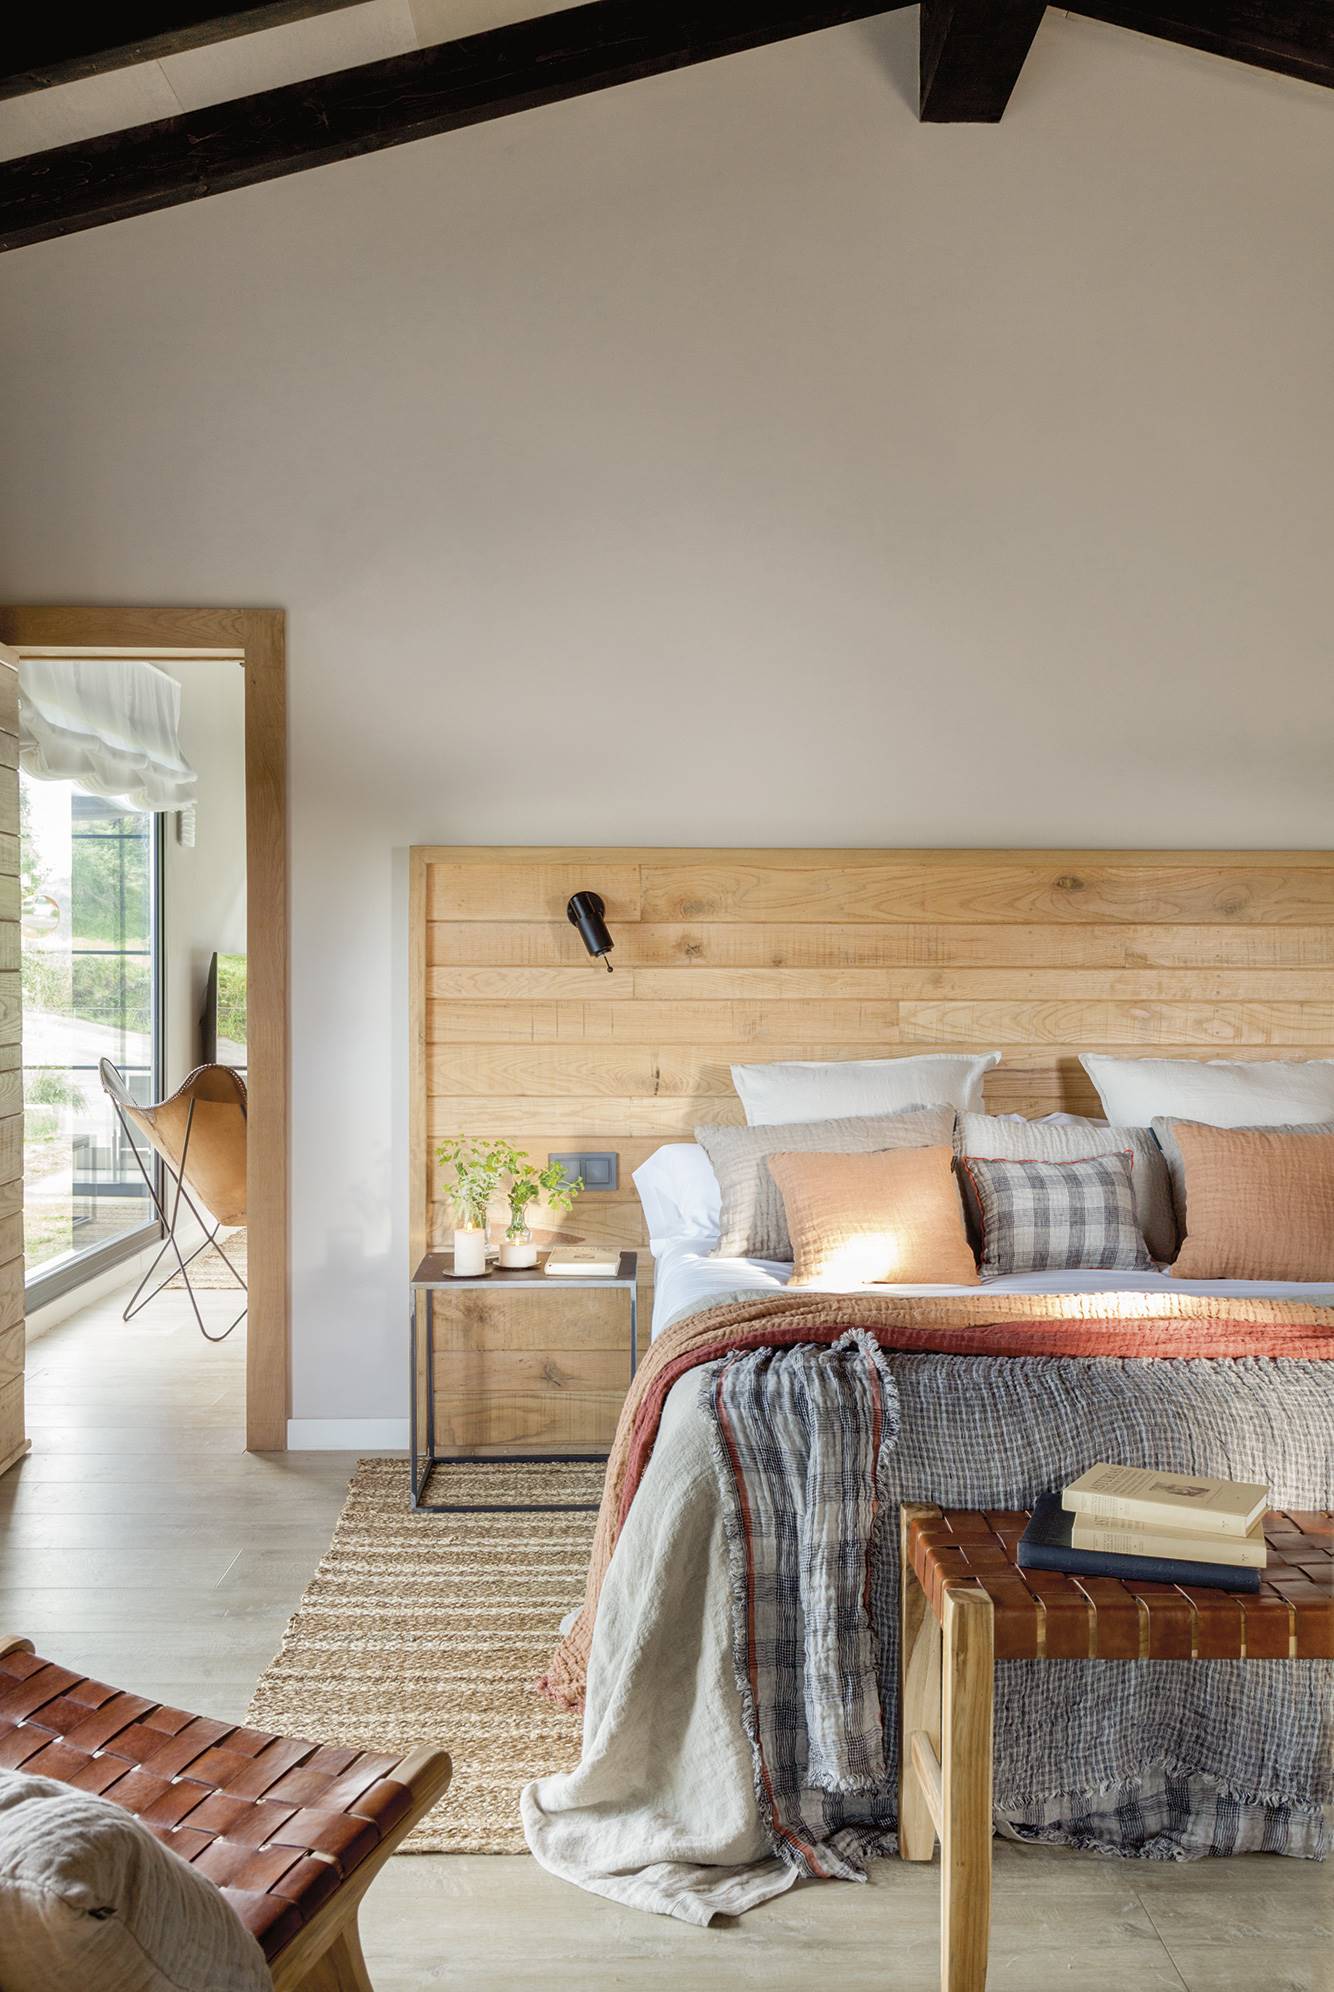 Dormitorio en una cabaña de montaña, de estilo industrial con cabecero de madera y plaid a cuadros.